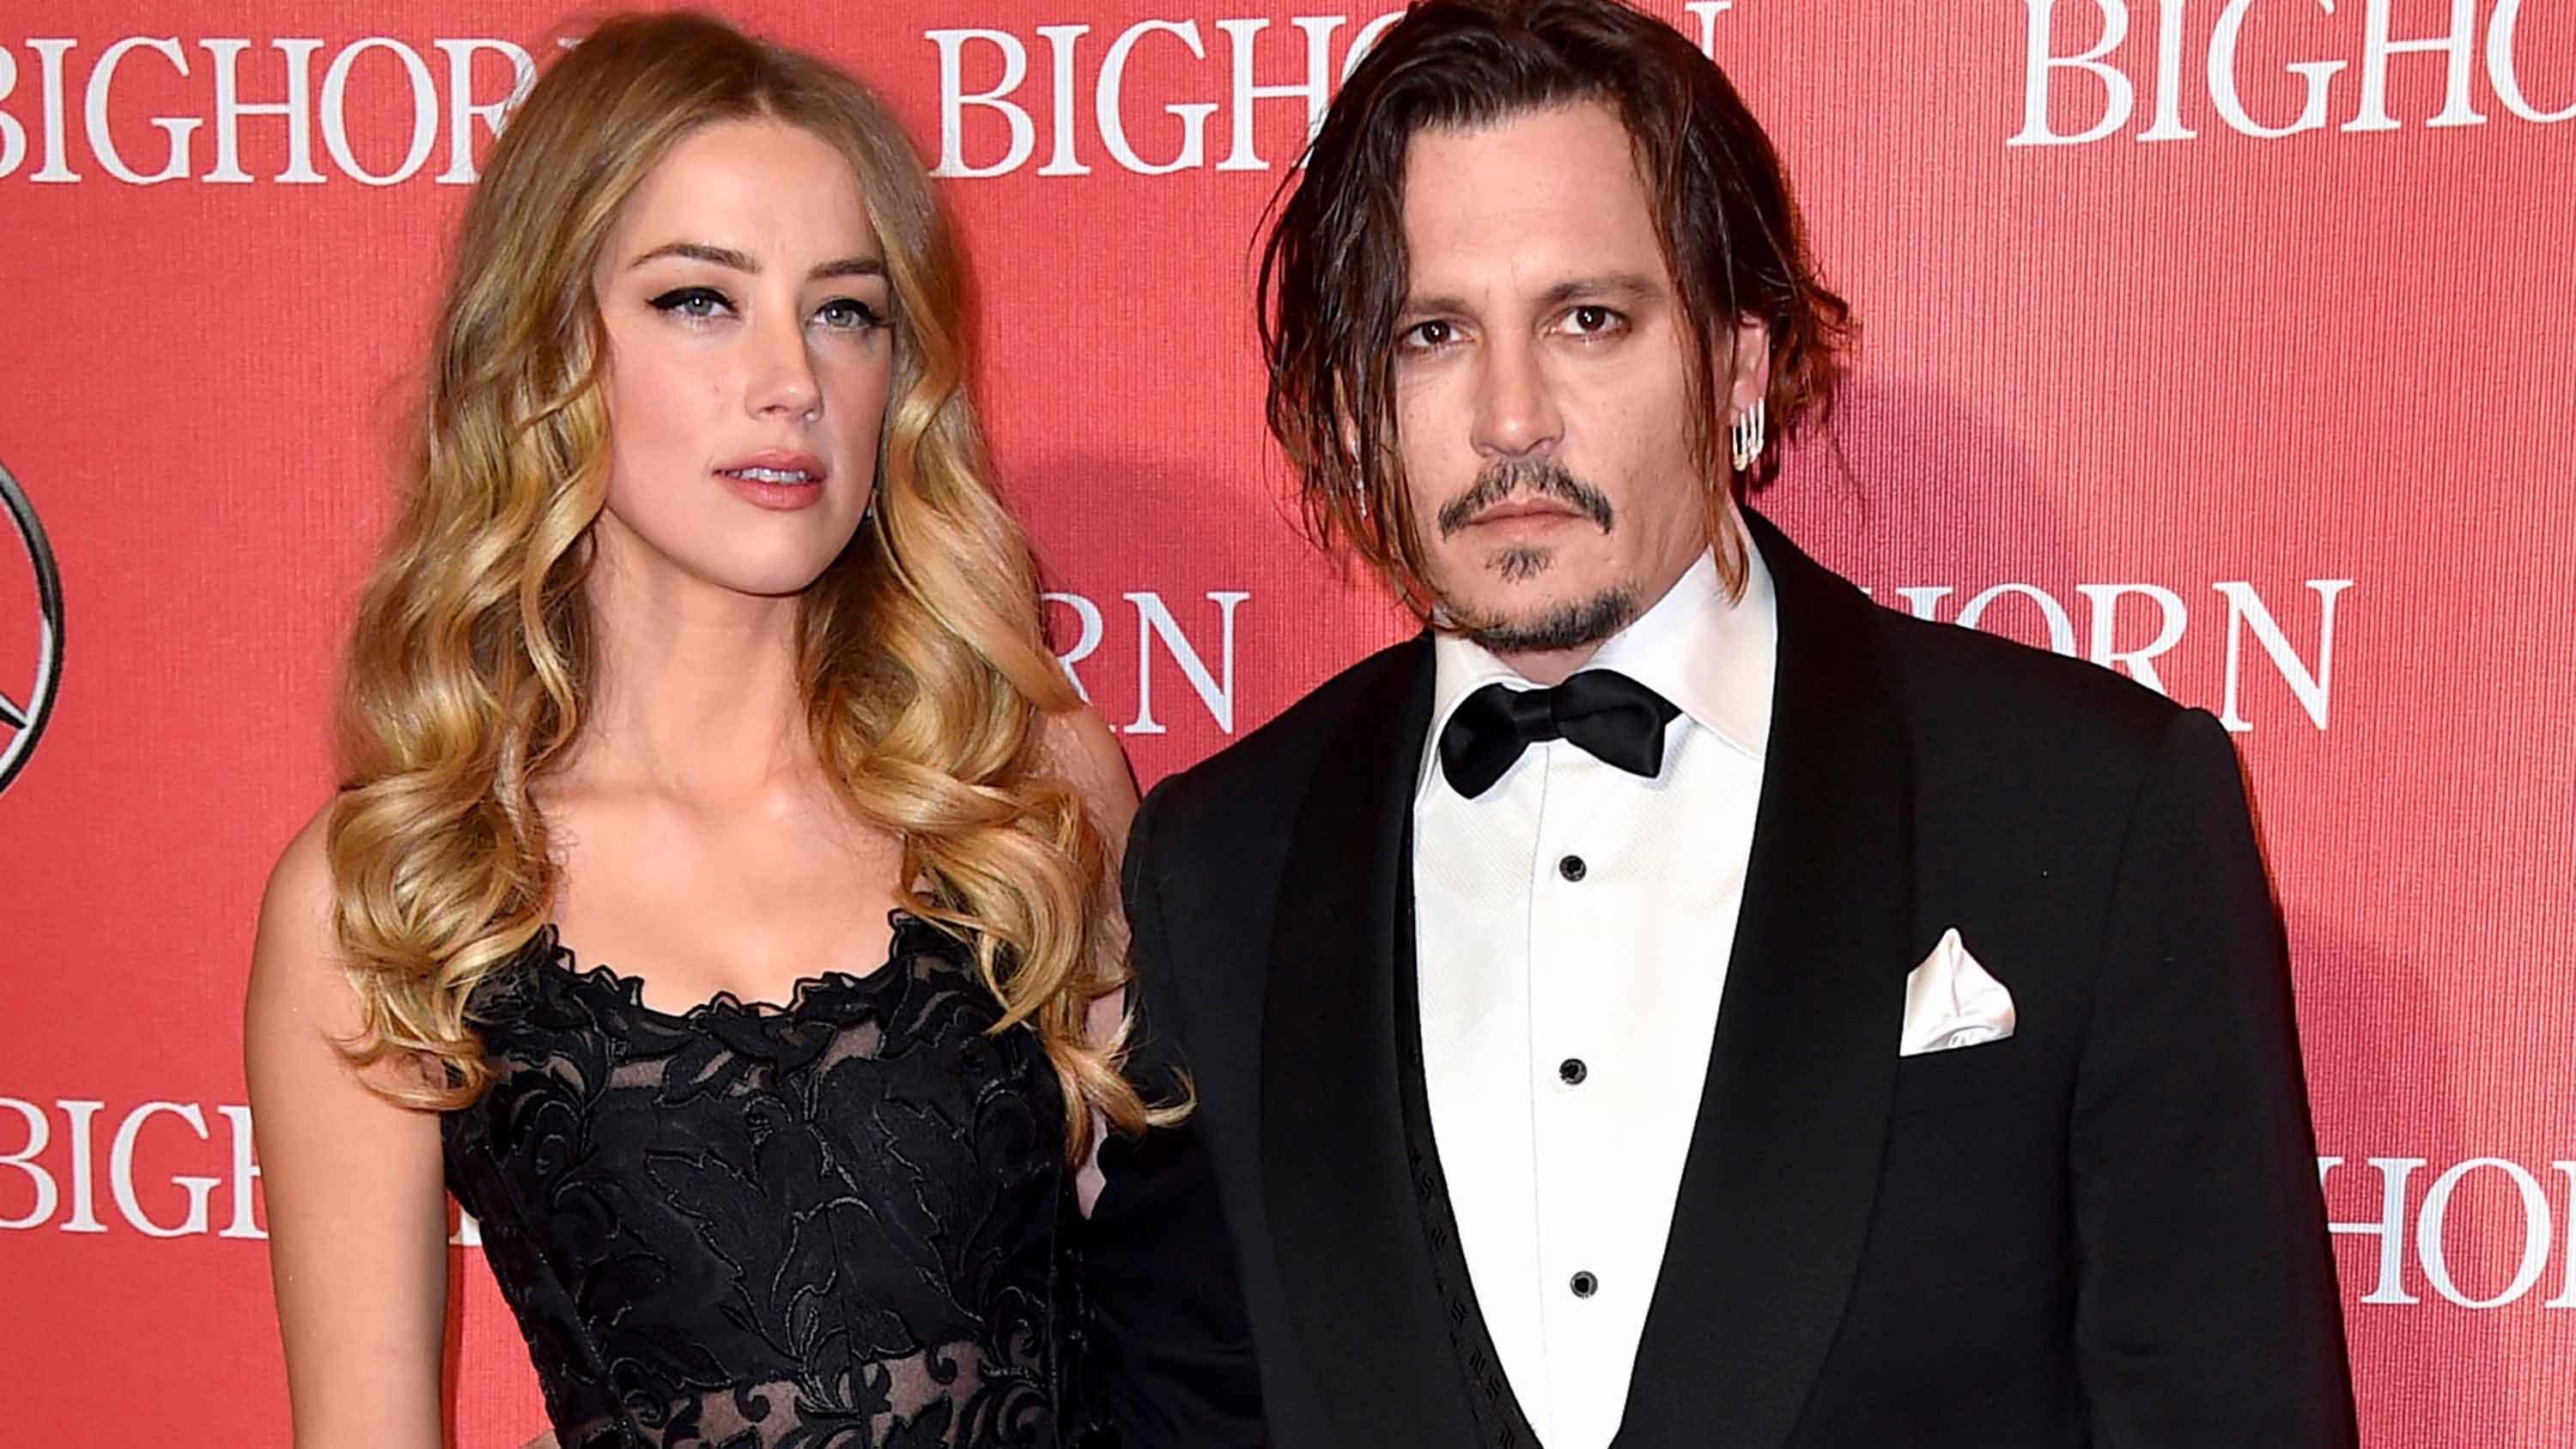 La fuerte denuncia de Amber Heard sobre Johnny Depp: “Me abofeteó con fuerza, me agarró del pelo y me arrastró”